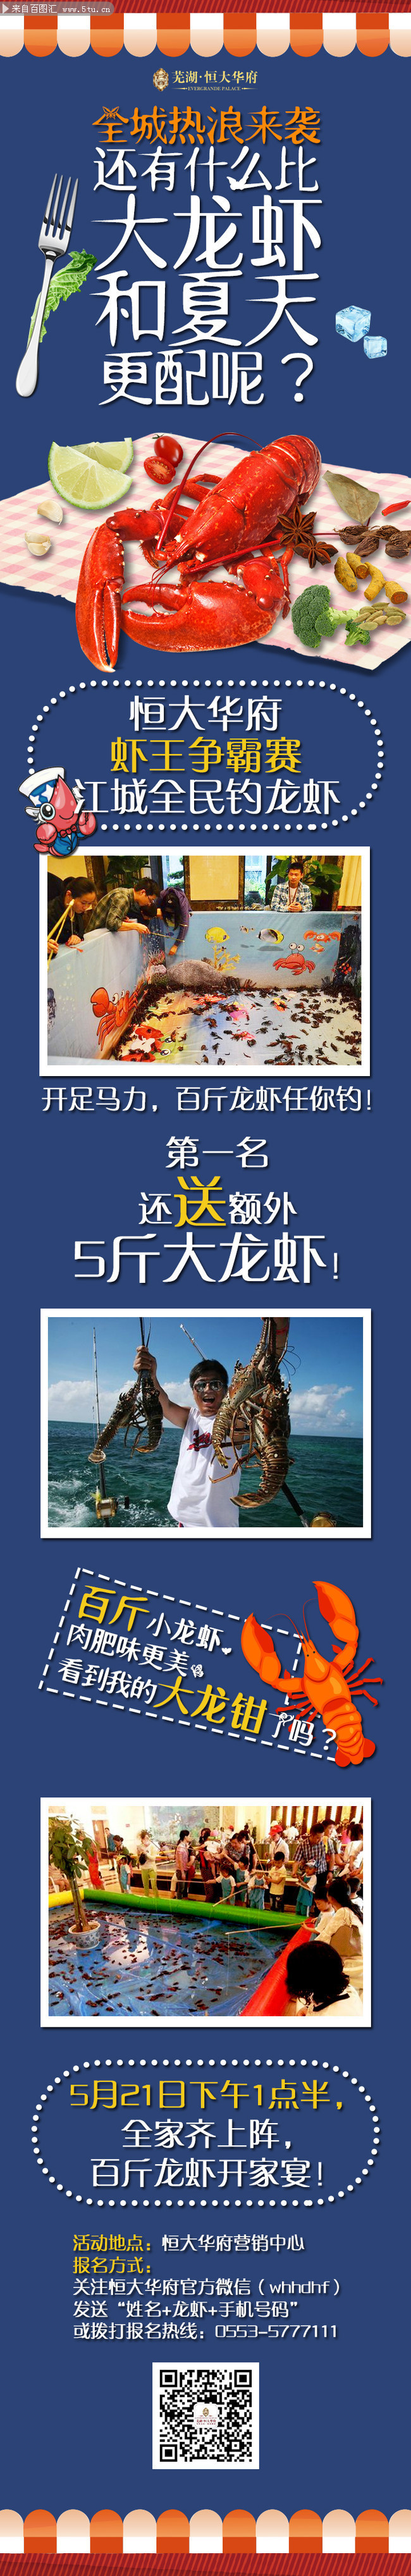 微信小龙虾广告图片